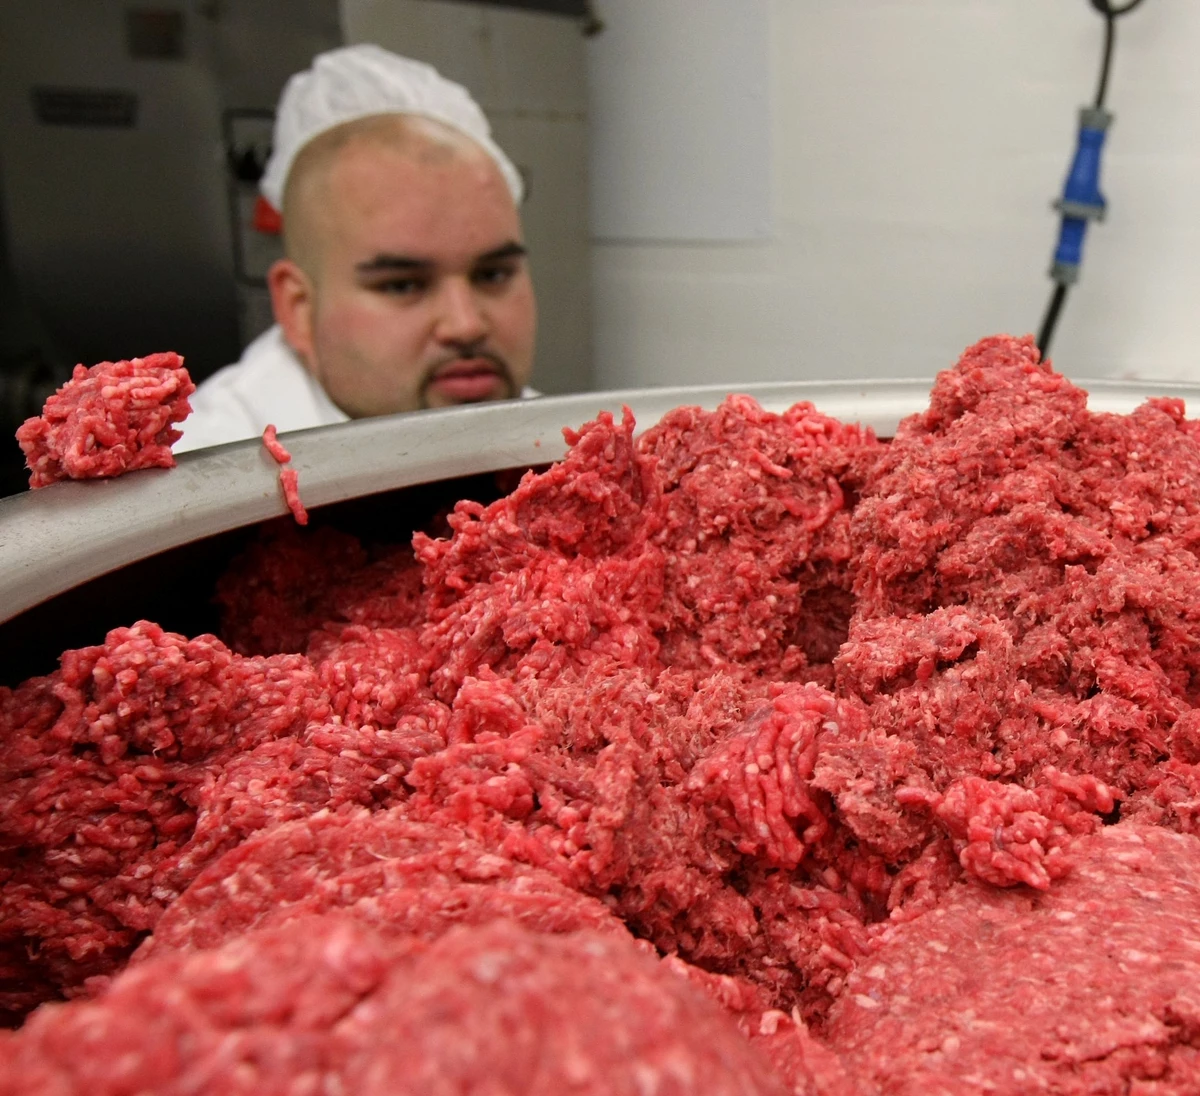 Recall At New England Walmarts Ground Beef May Be Contaminated